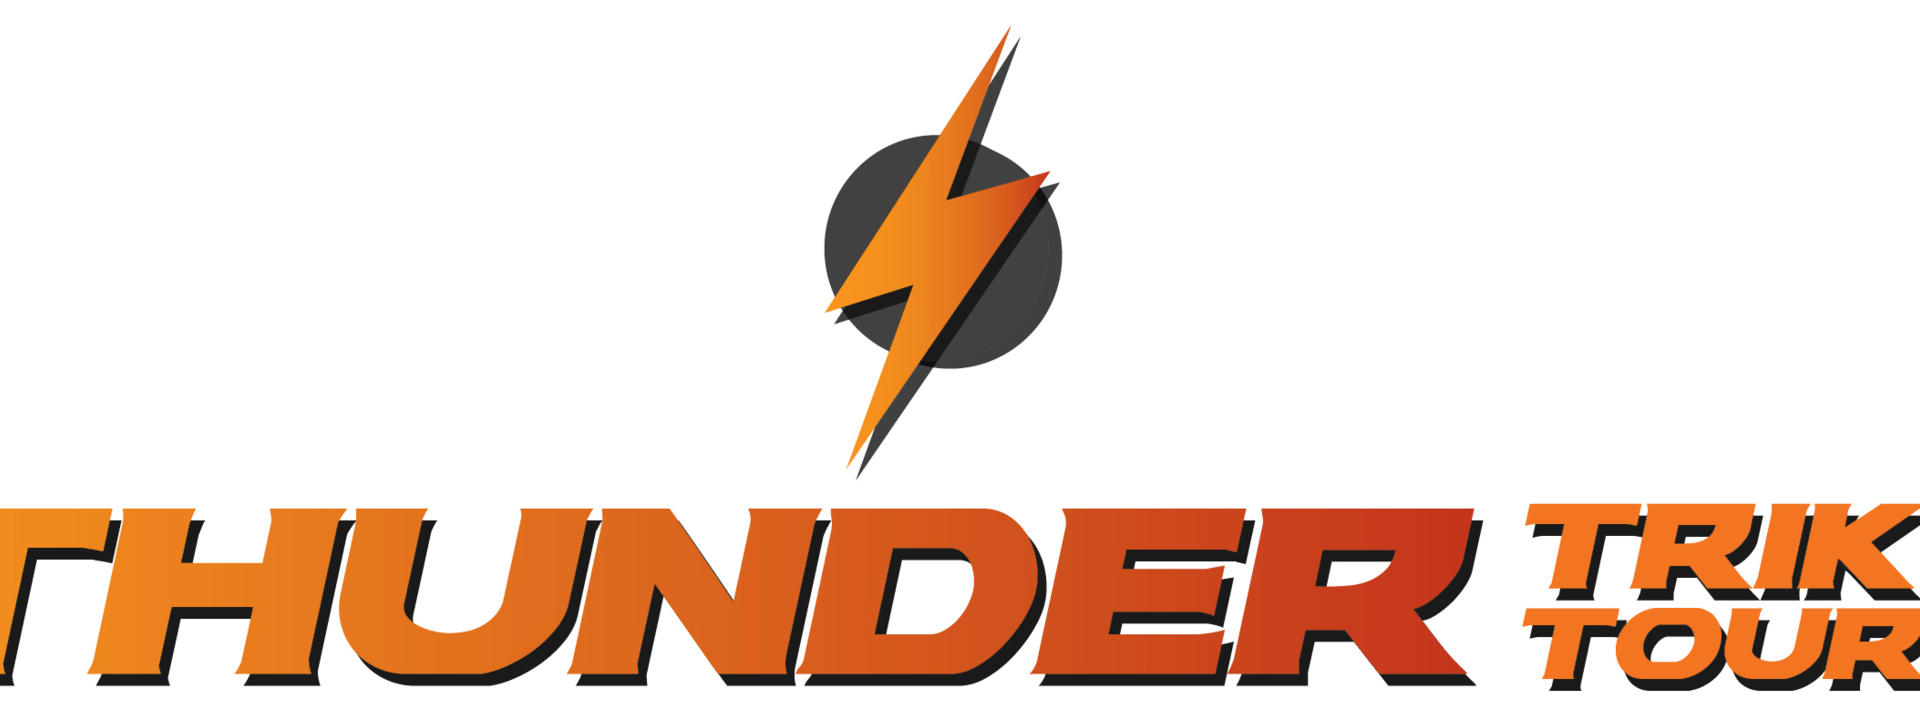 thunder-tride-tours-387679-logo-design-logo2.jpg